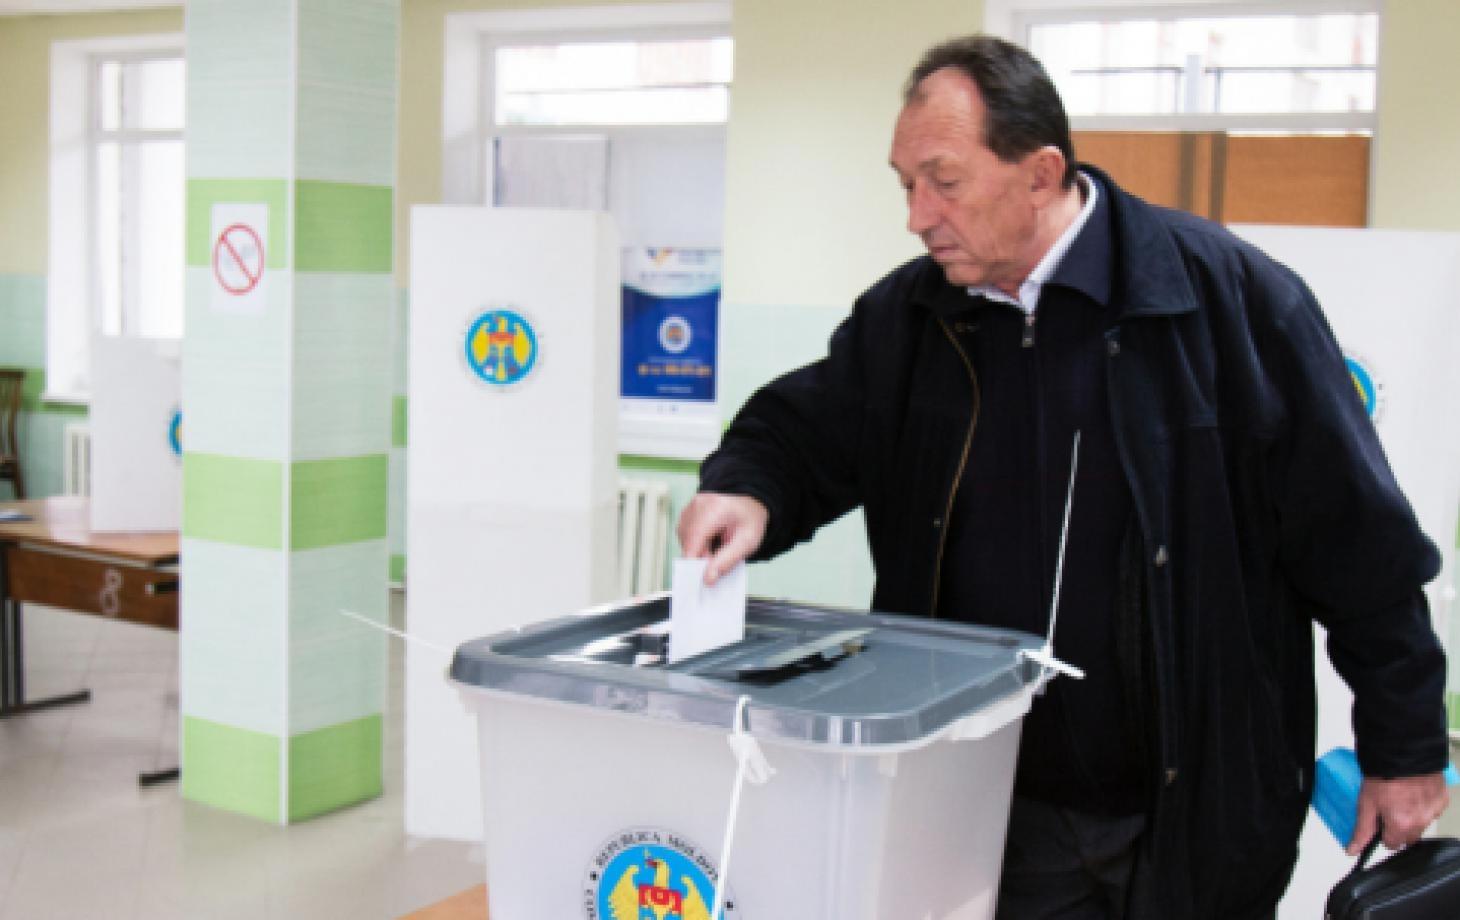 выборы в Молдове